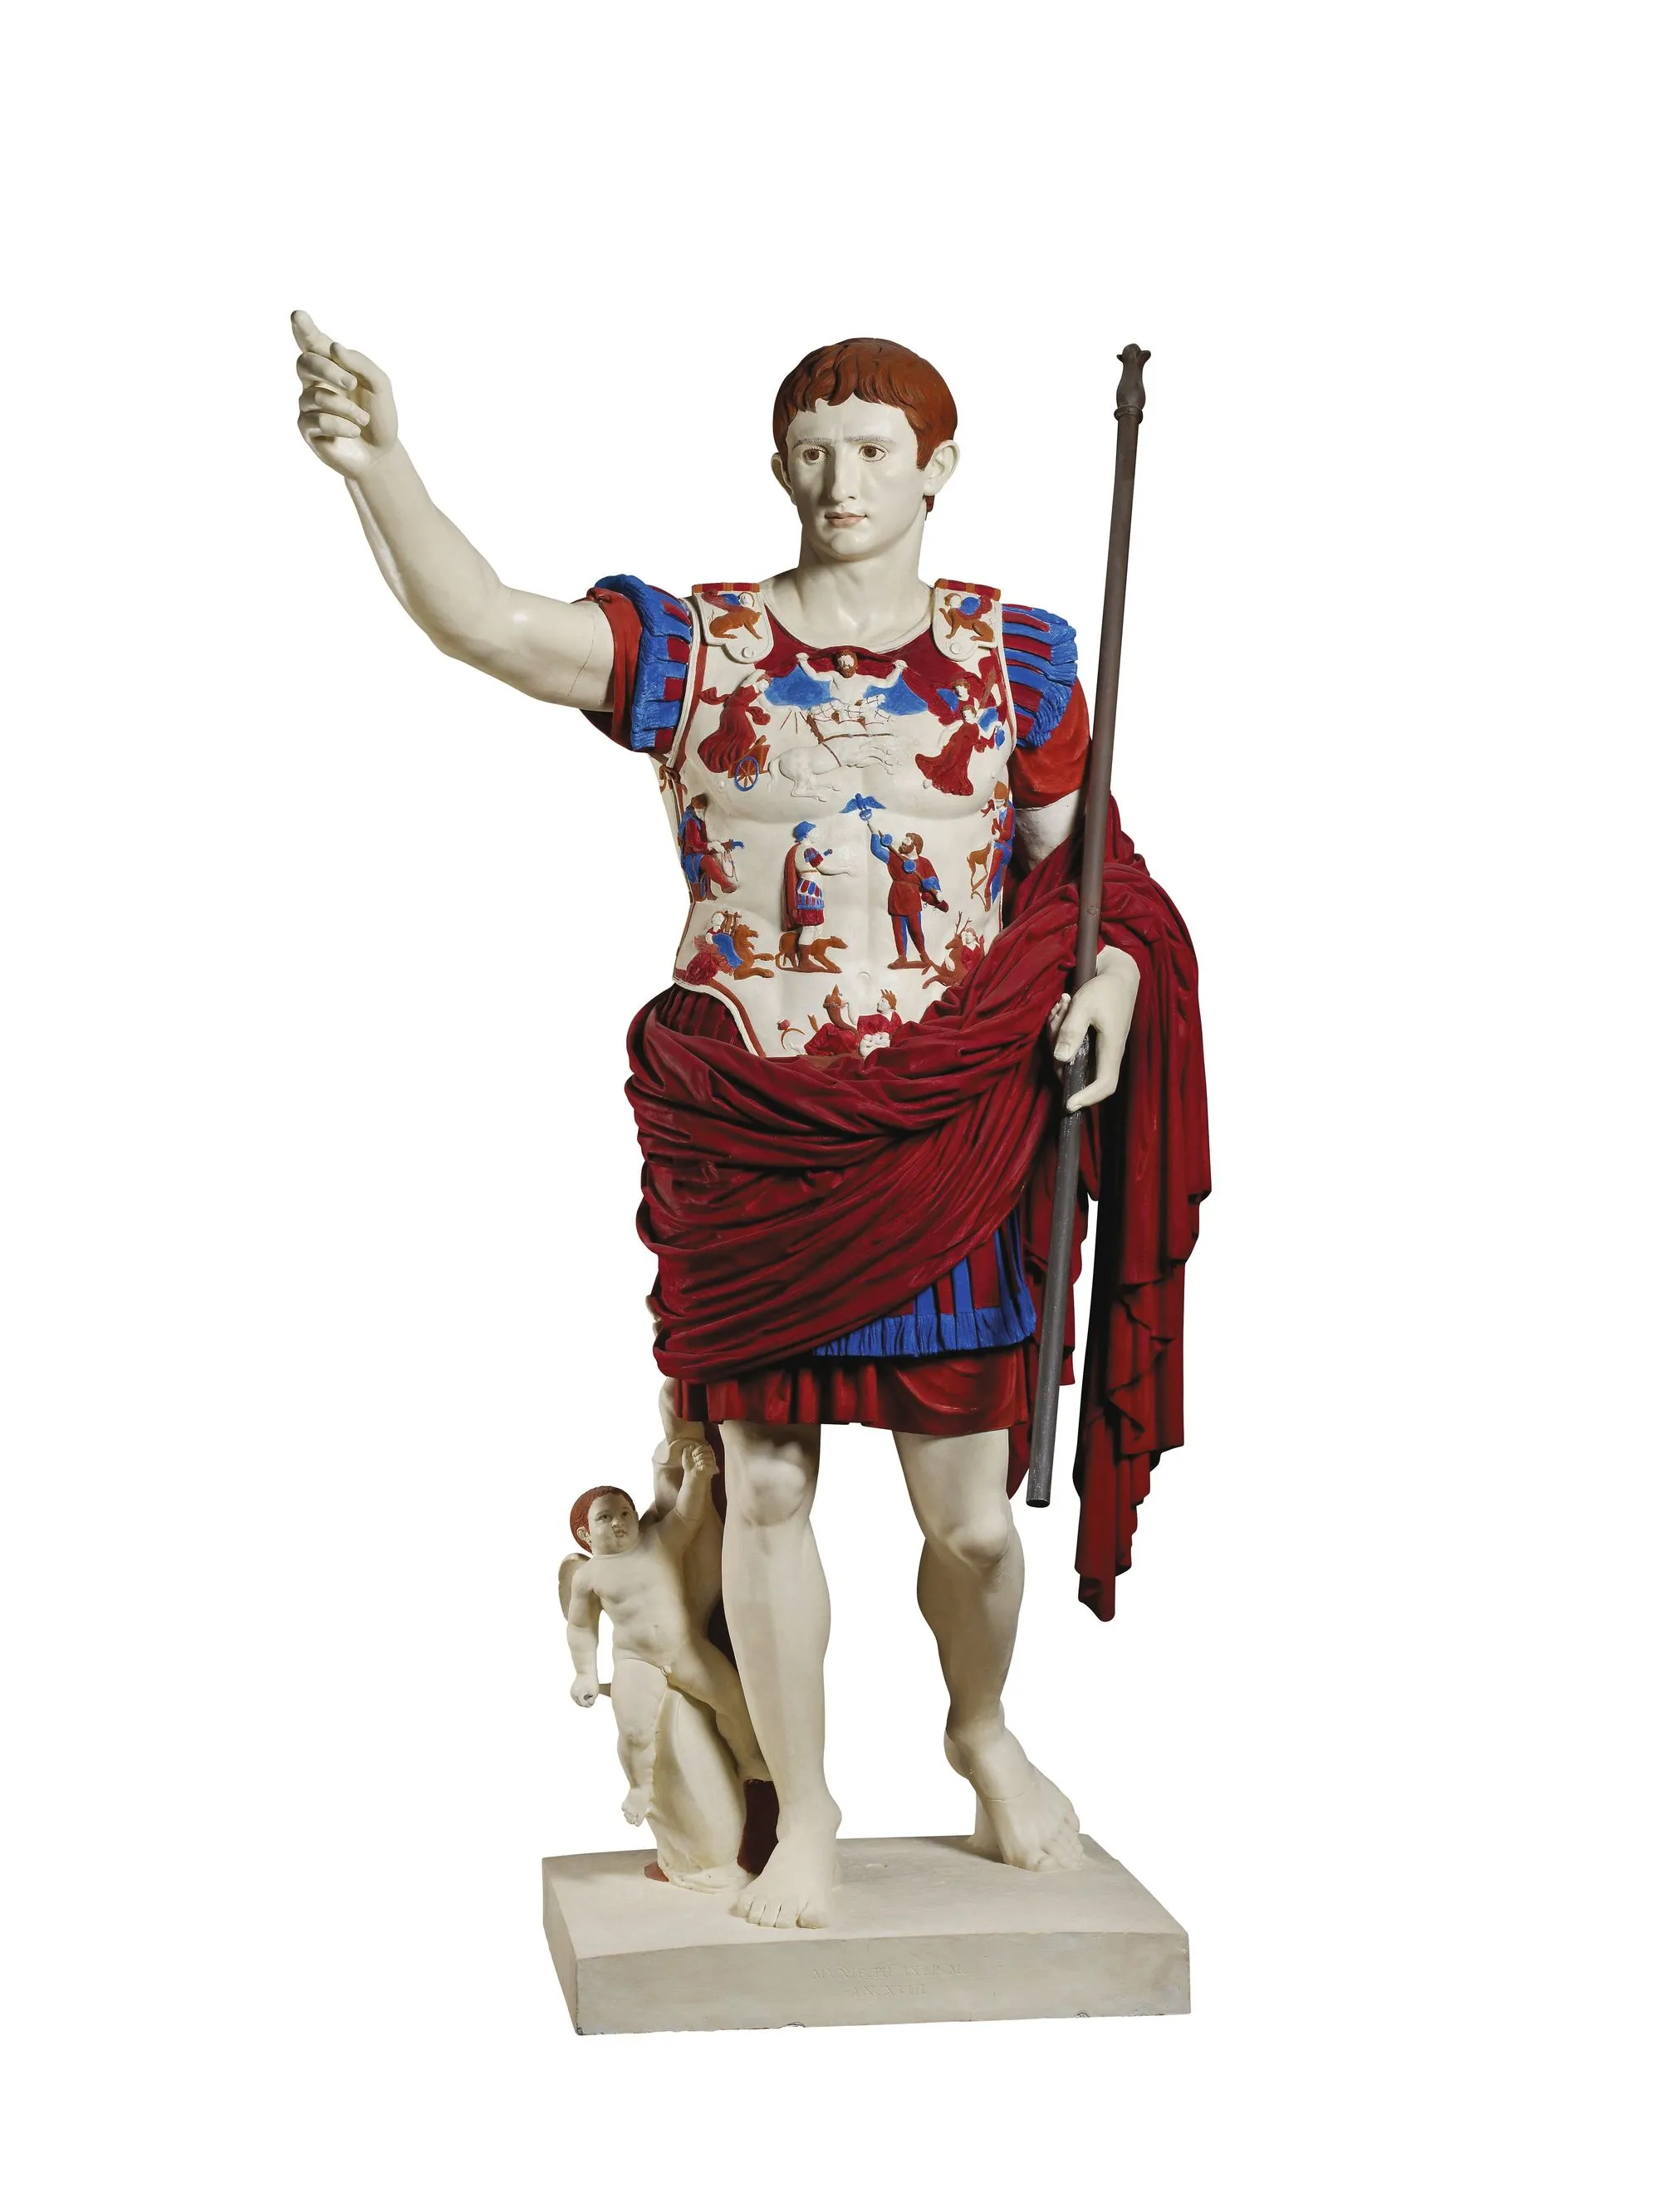 Moulage de plâtre de la statue d'Auguste Prima Porta et restitution de la peinture d'origine